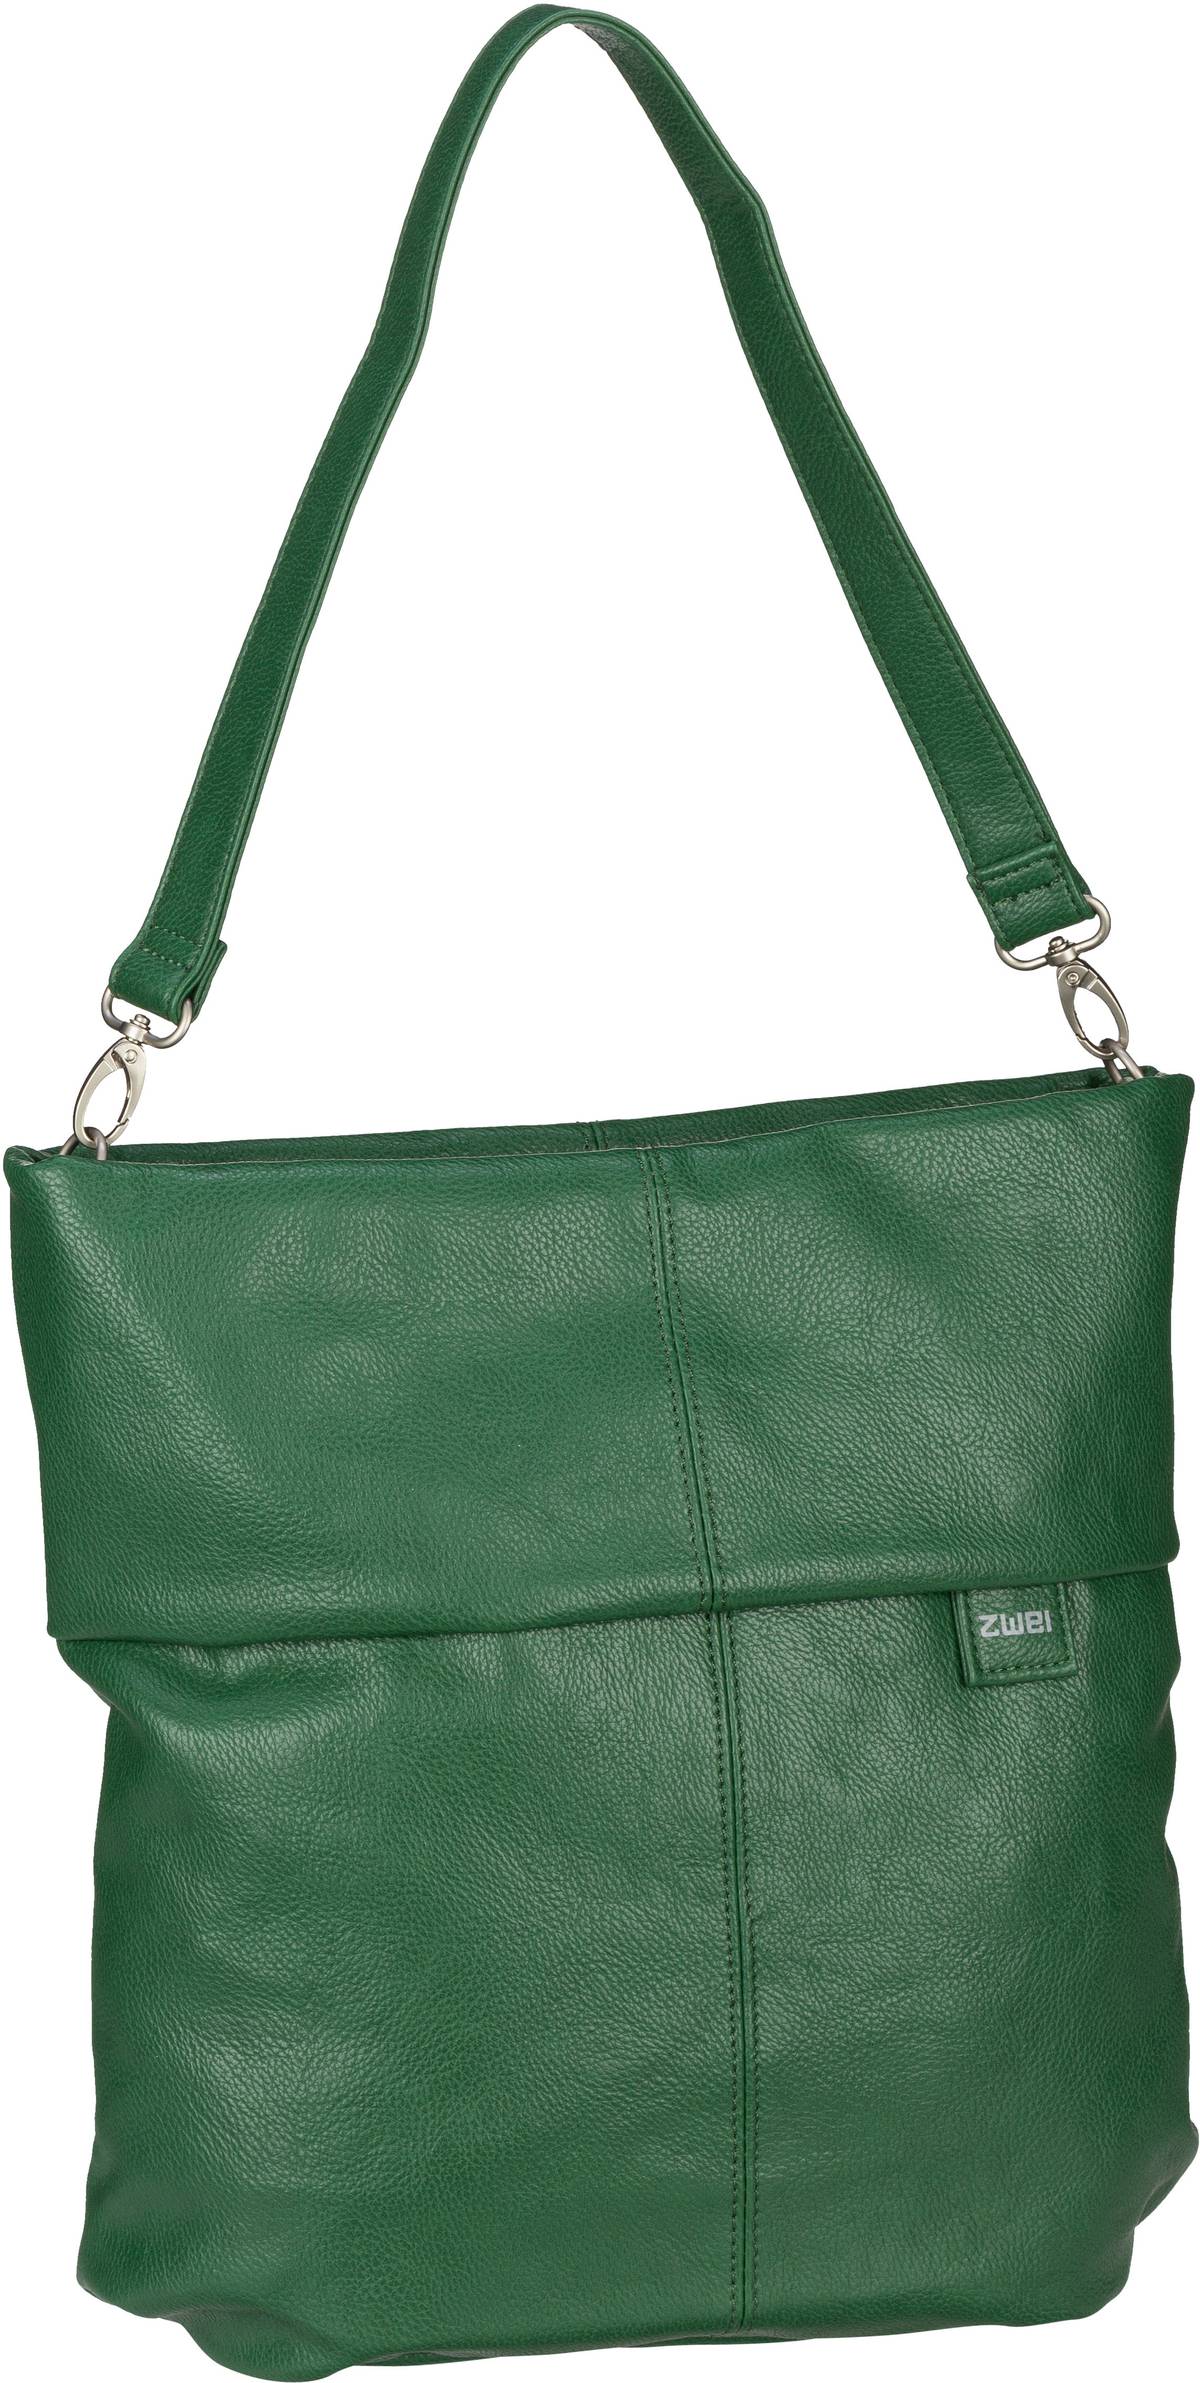 zwei Mademoiselle M12  in Grün (7 Liter), Handtasche von Zwei